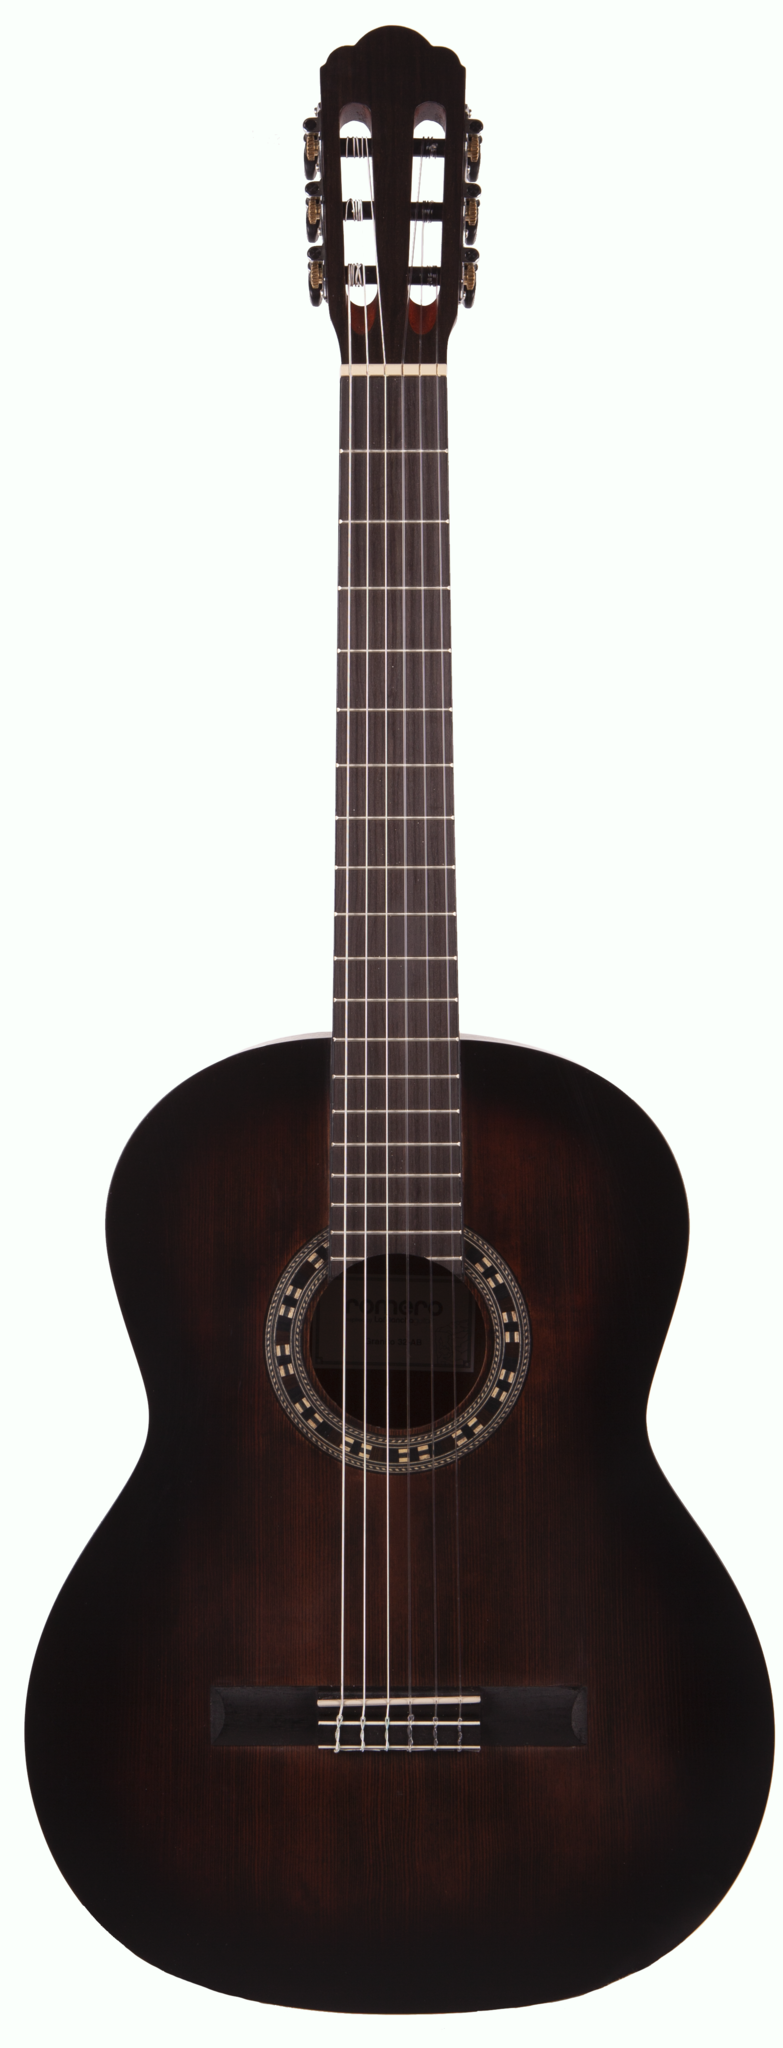 Гитара классик купить. Yamaha fg800 Black. Акустическая гитара Prado HS-3805 BK. Акустическая гитара Ямаха fg800 Блэк. Гитара Colombo LF-4100 BK.